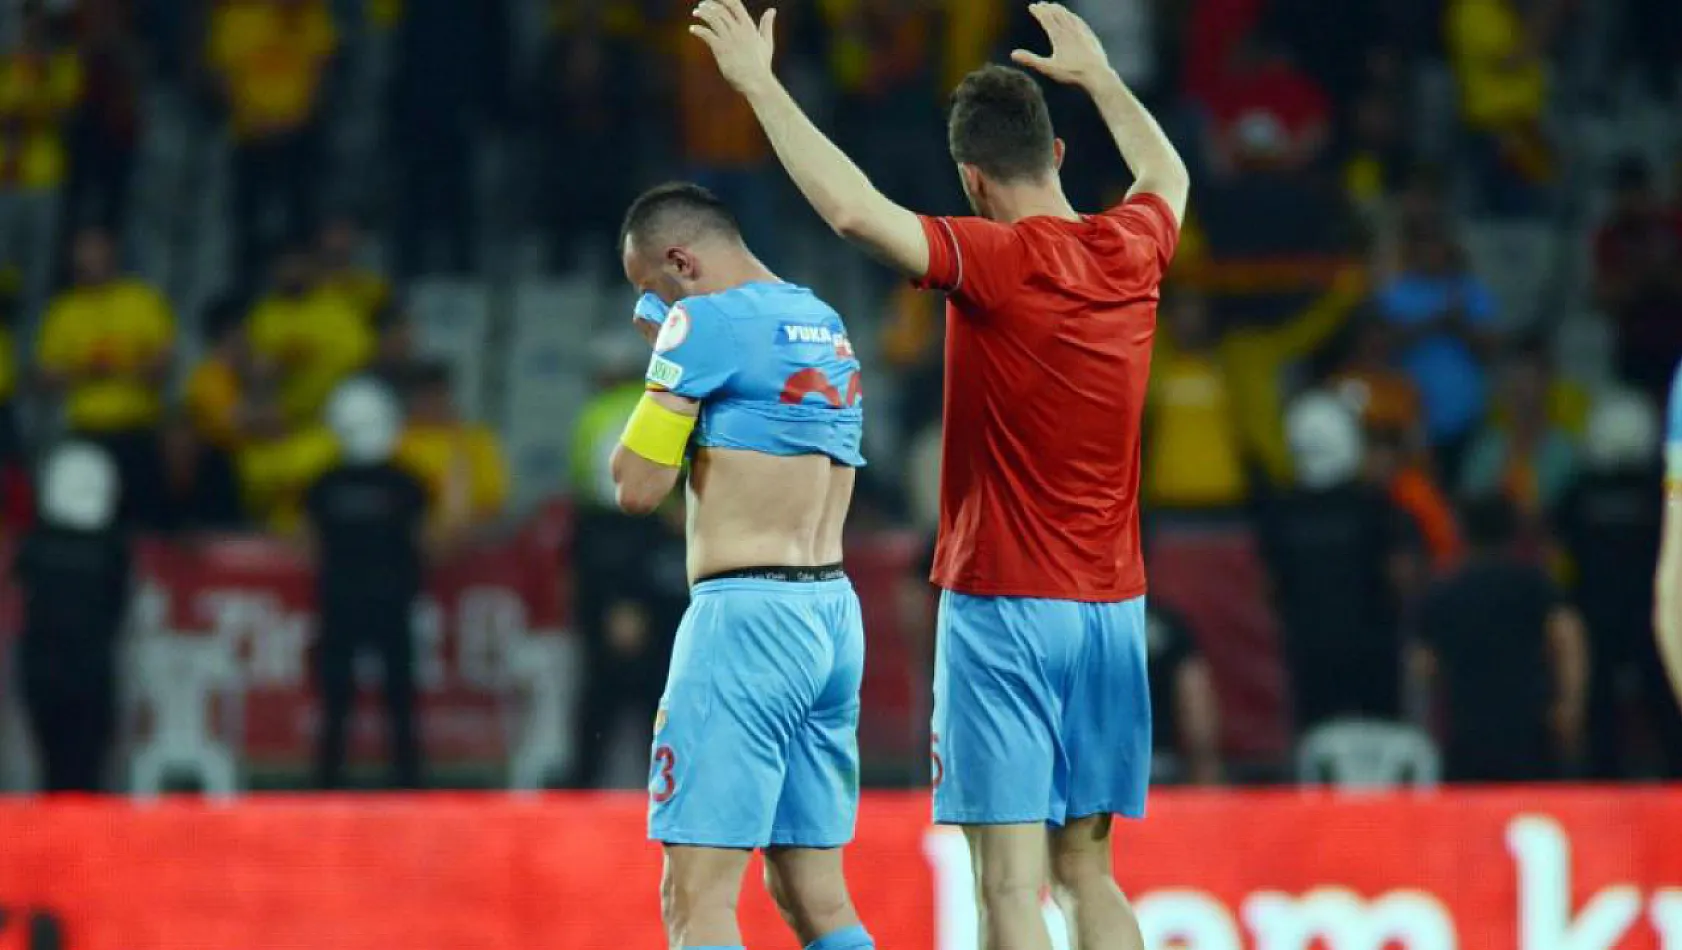 İlhan Parlak futbolu bıraktı - Kayserispor Haberleri